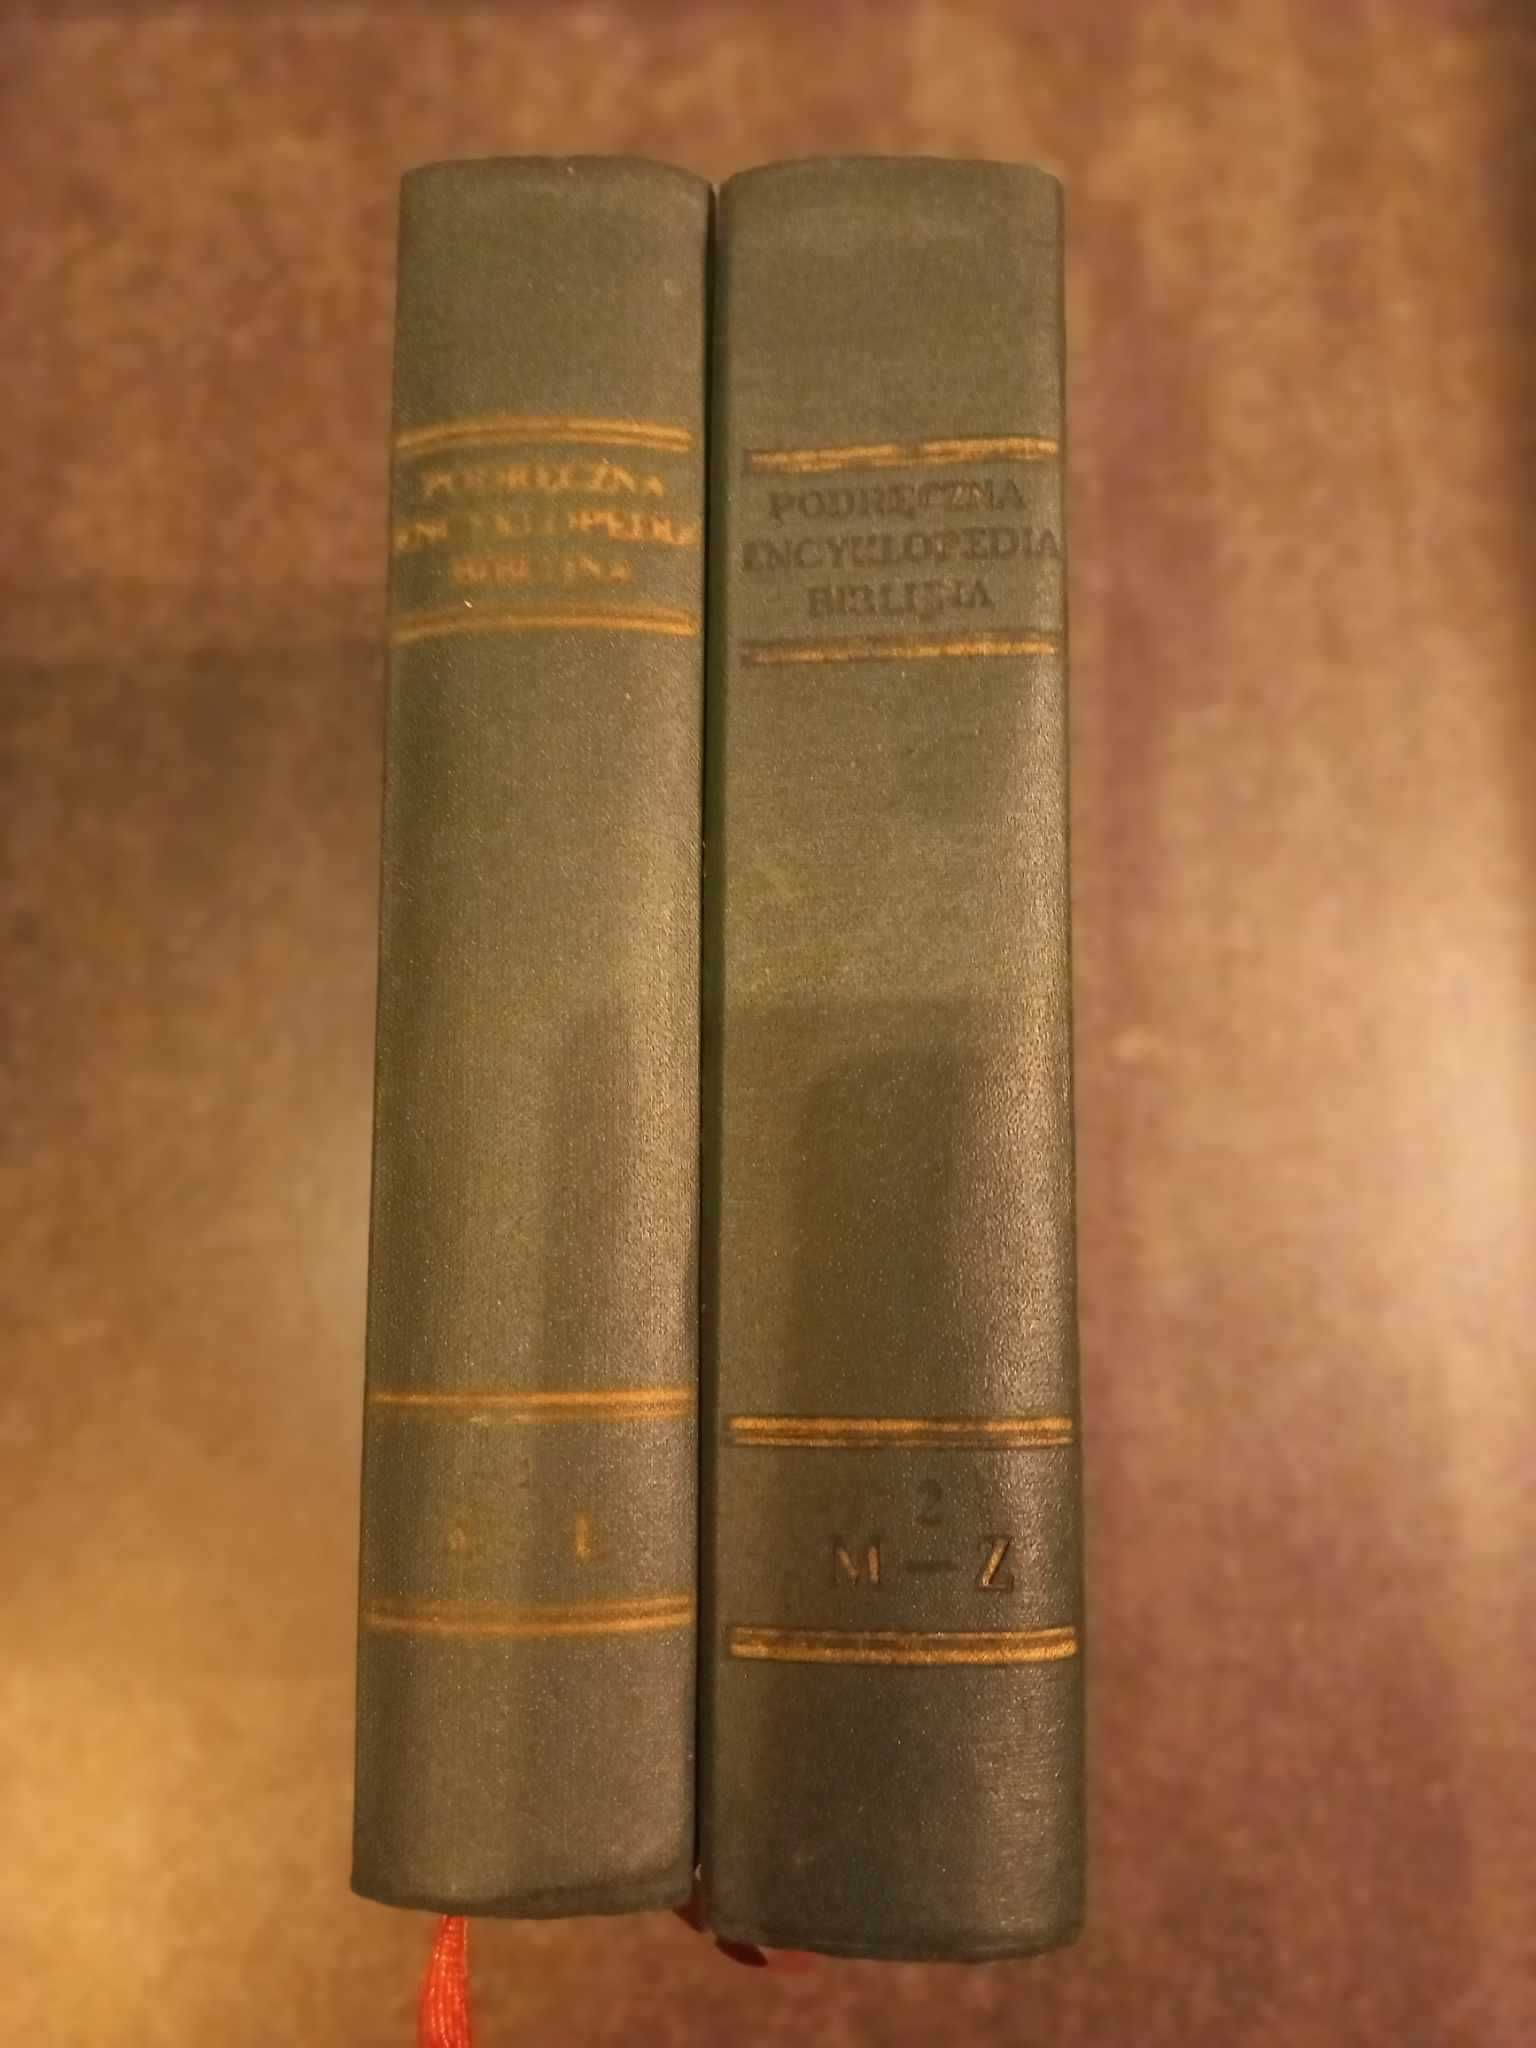 Podręczna encyklopedia Biblijna - praca zbiorowa, rok wydania 1959.